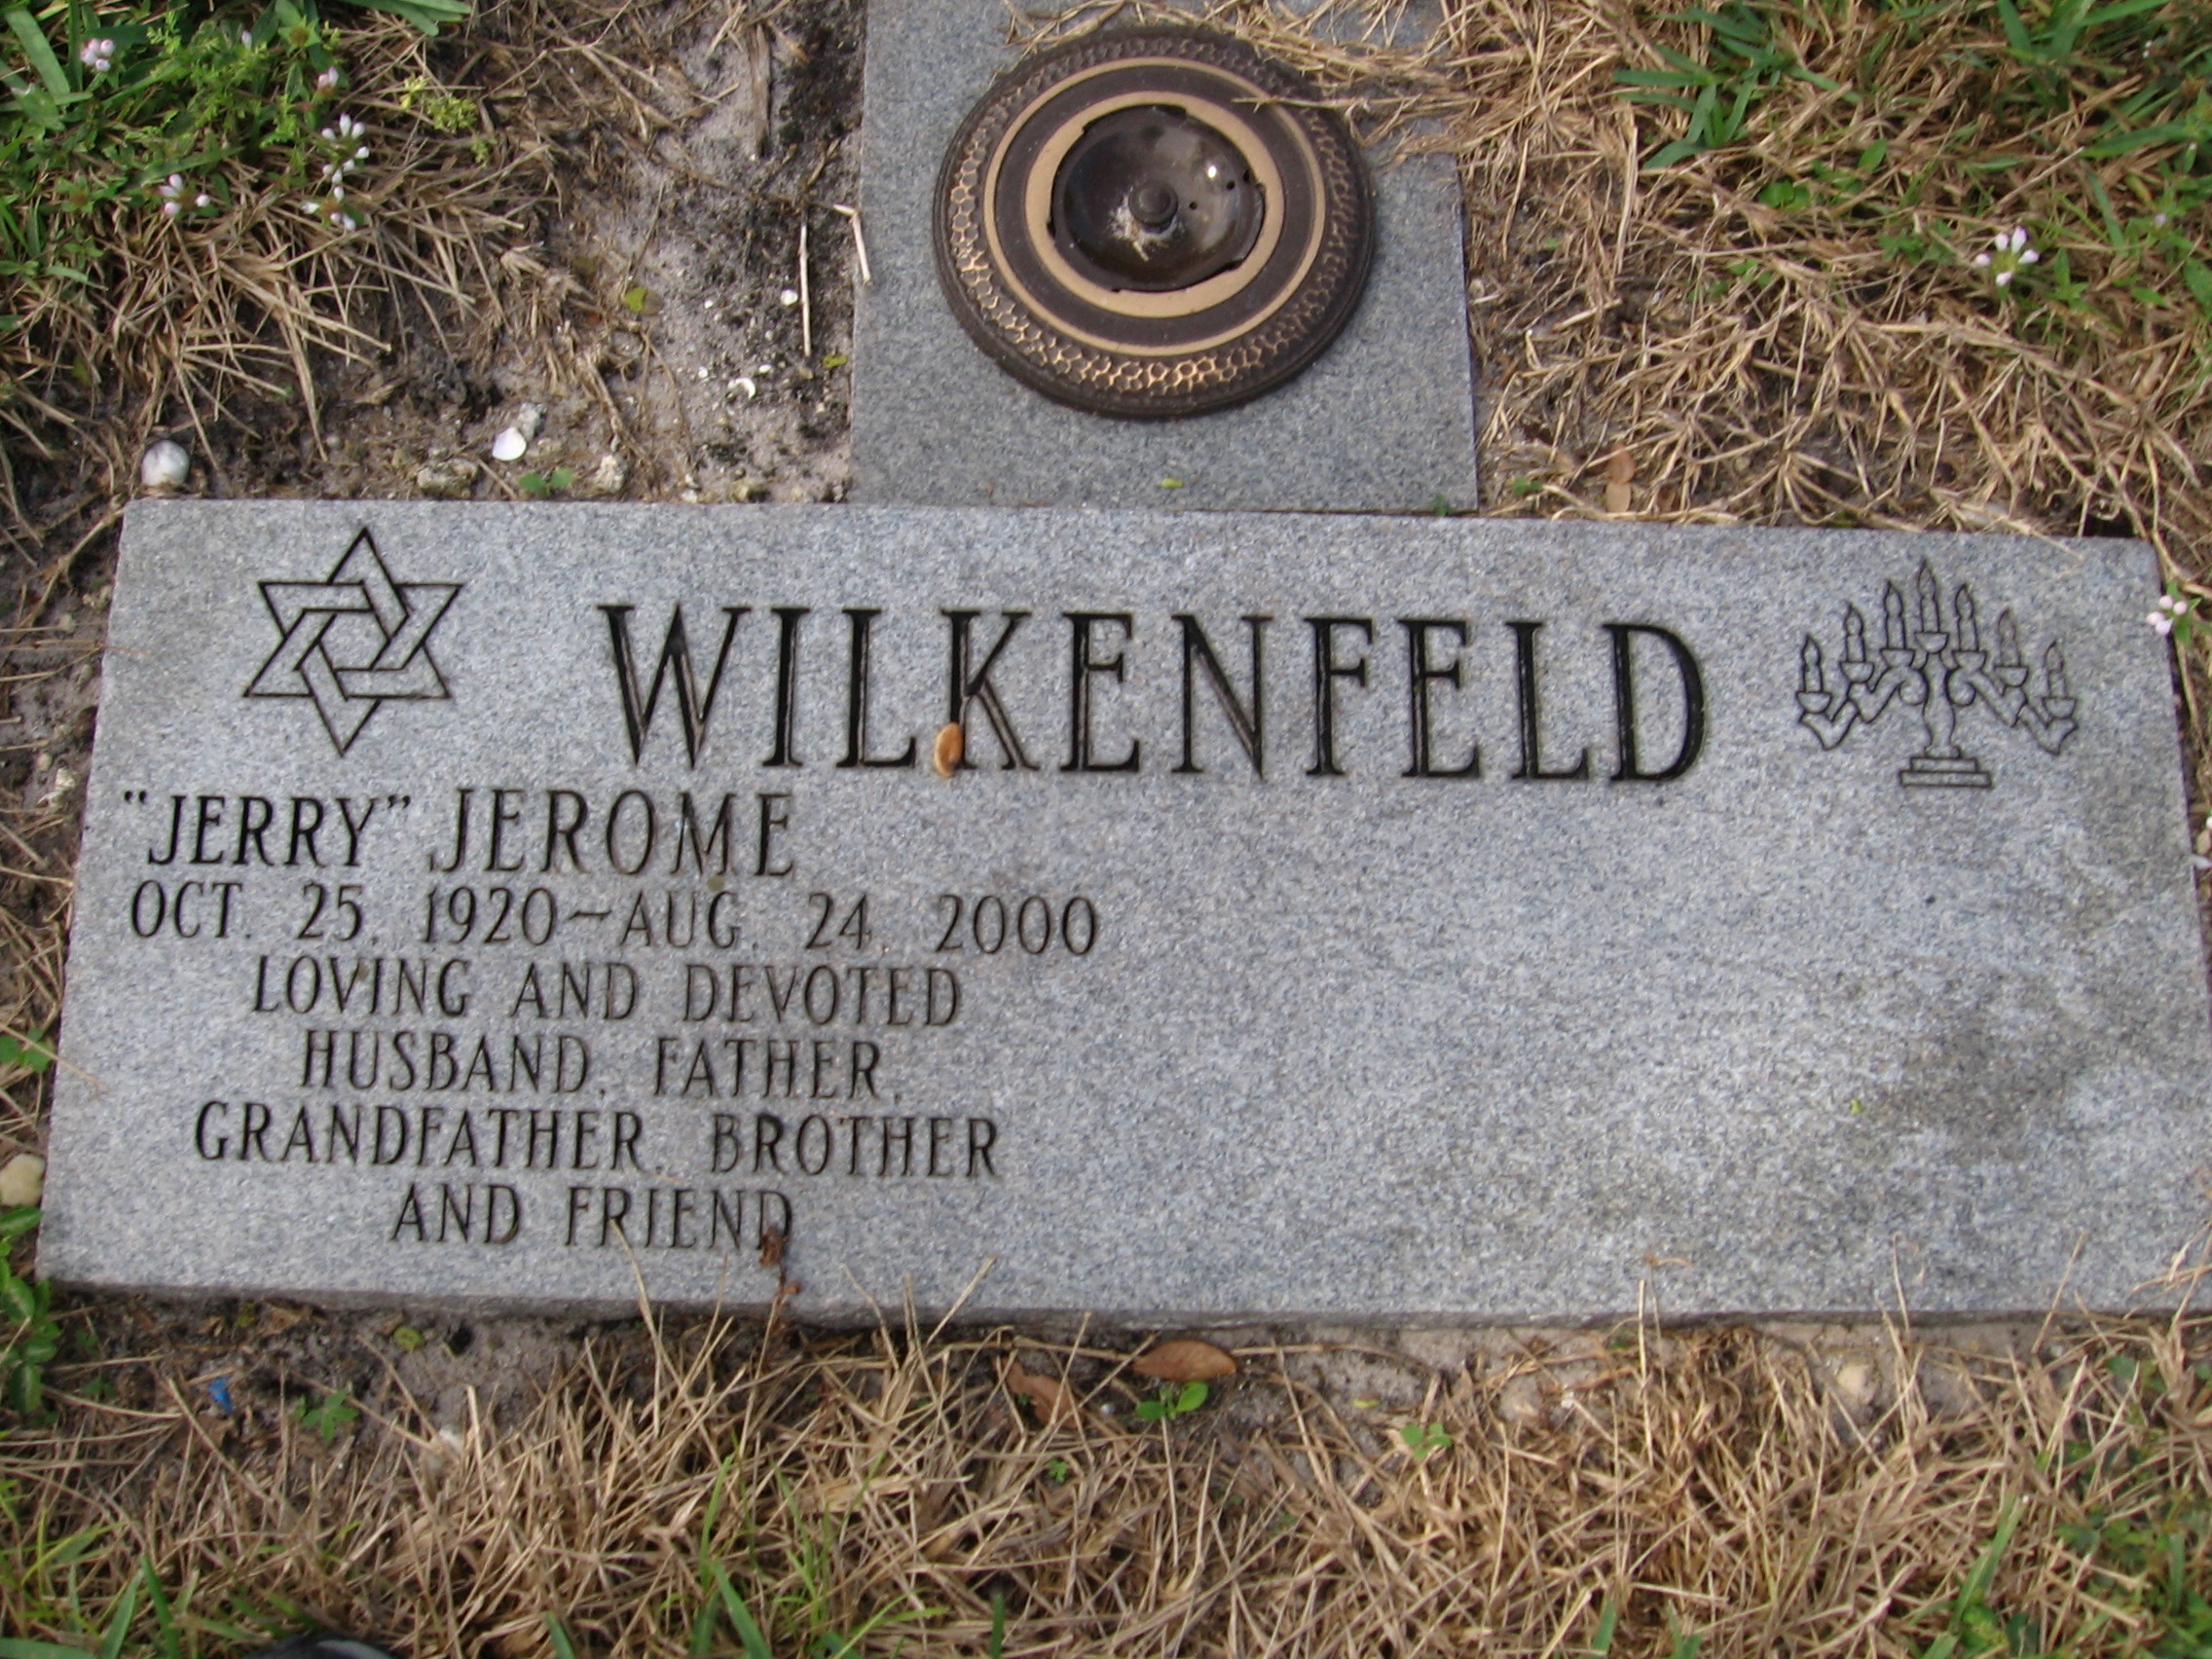 Jerome "Jerry" Wilkenfeld